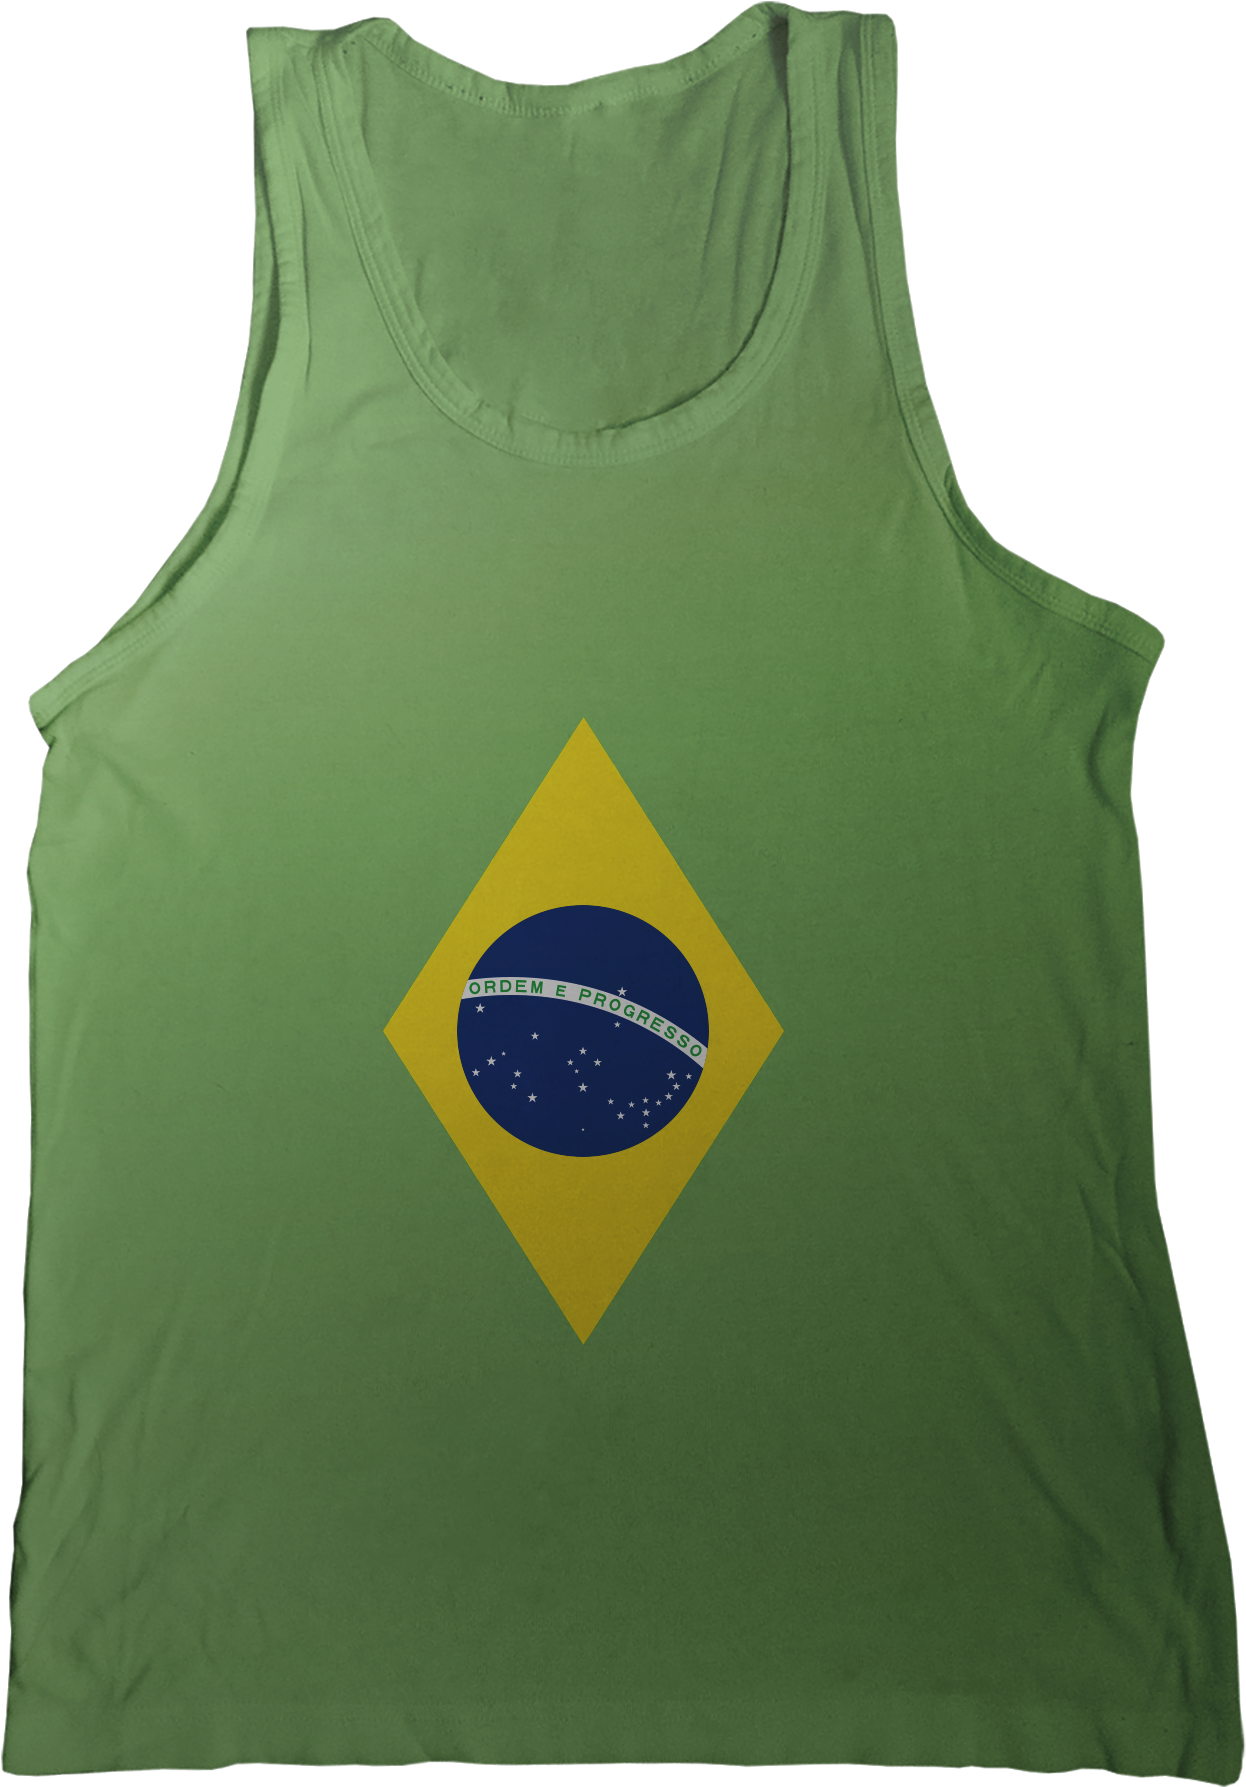 Флаг майка. Футболка с флагом Бразилии. Футболка Brazil зеленая. Майки с бразильским флагом. Флаг Бразилии.